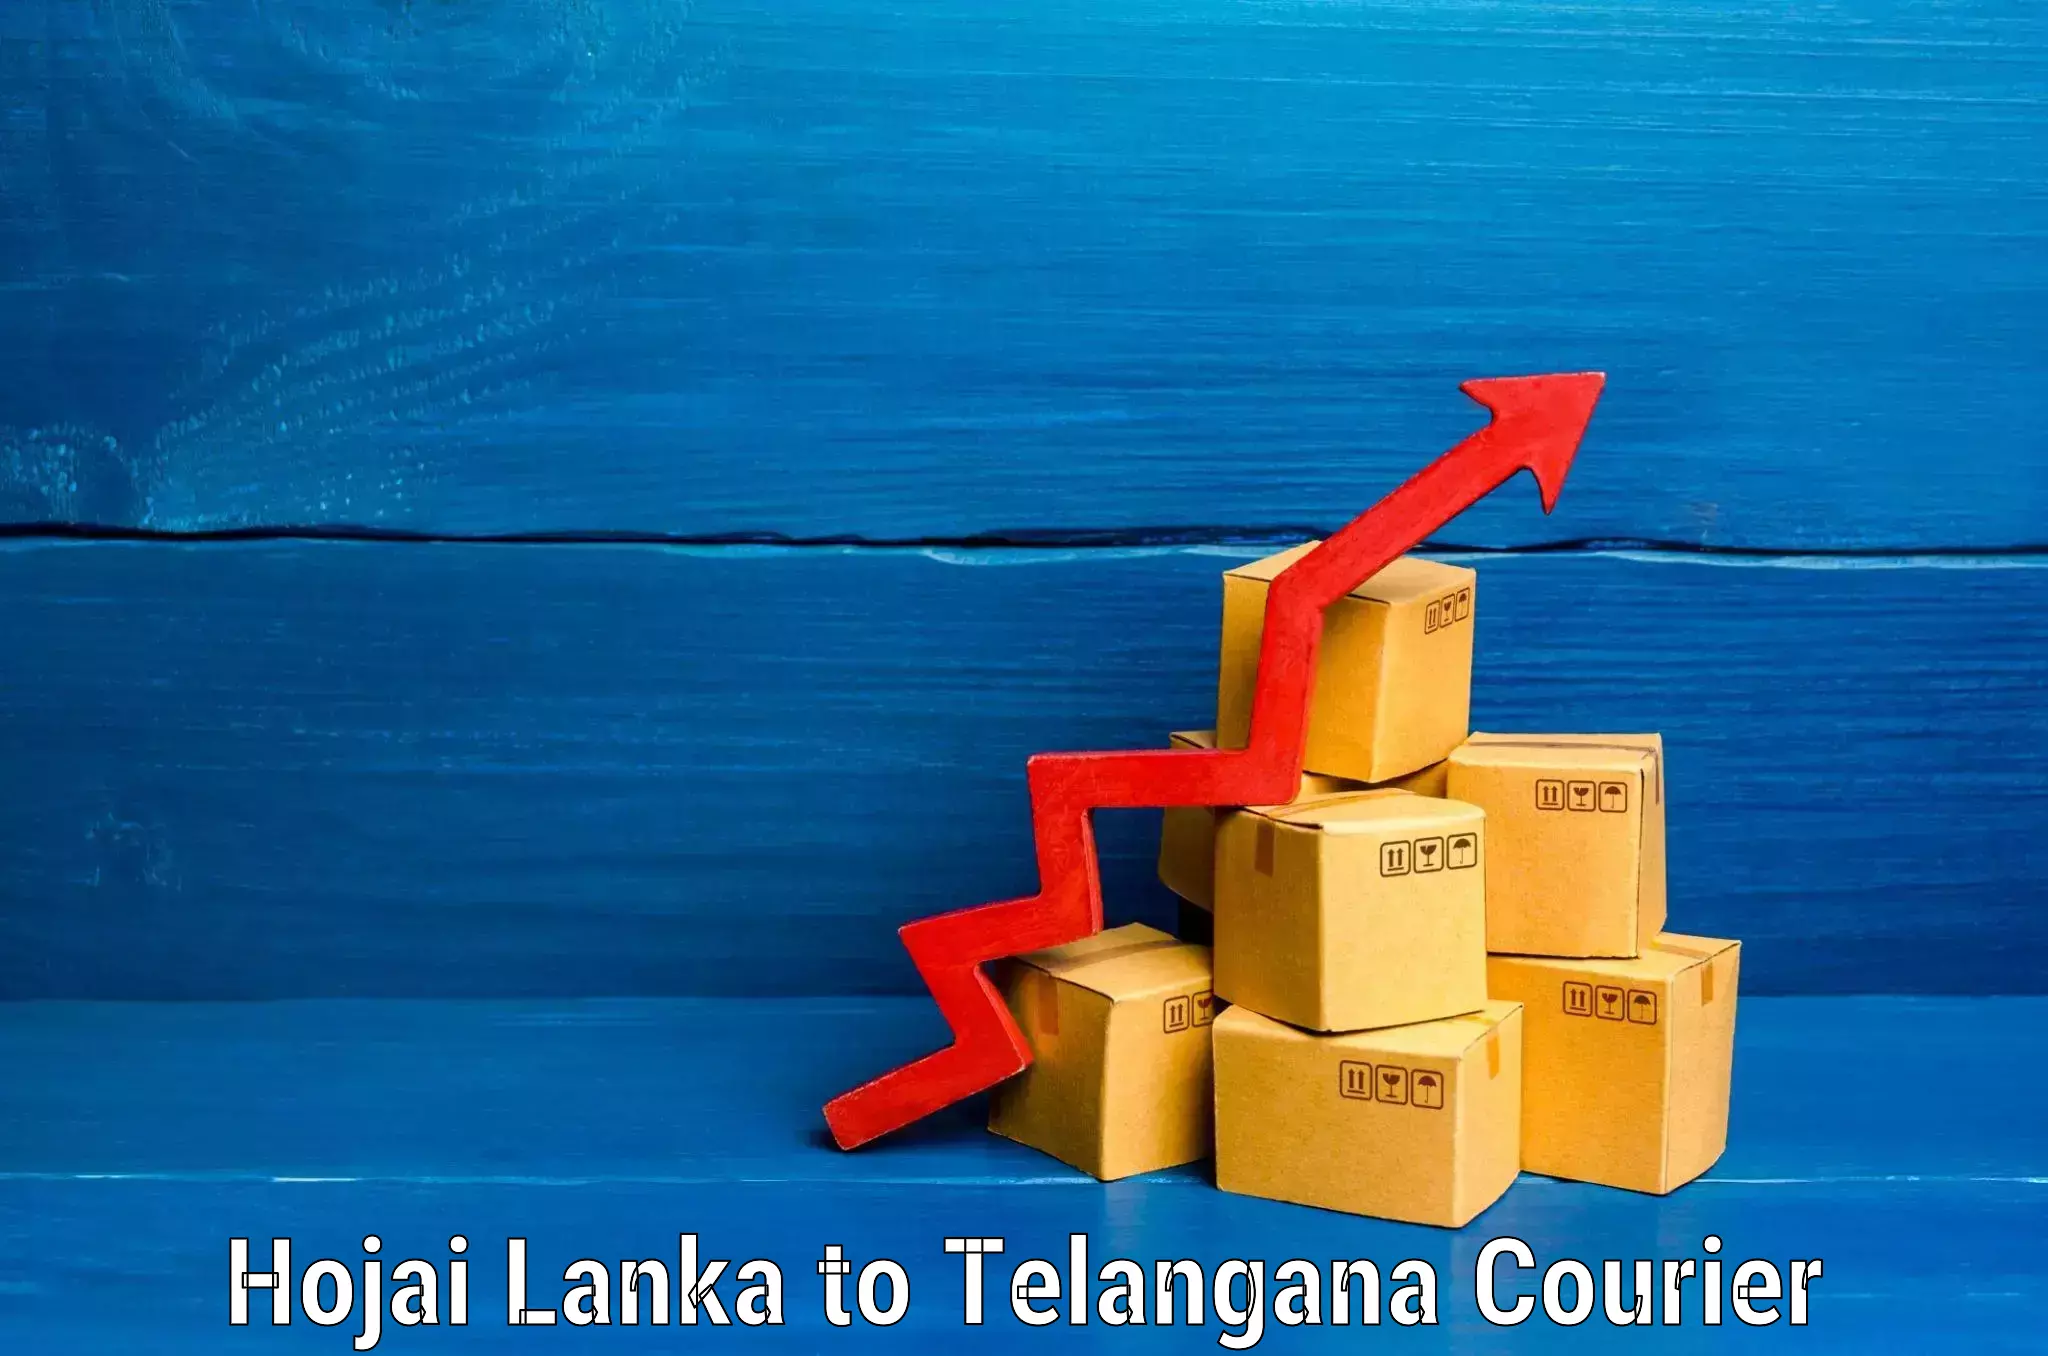 Electronic items luggage shipping Hojai Lanka to Jannaram